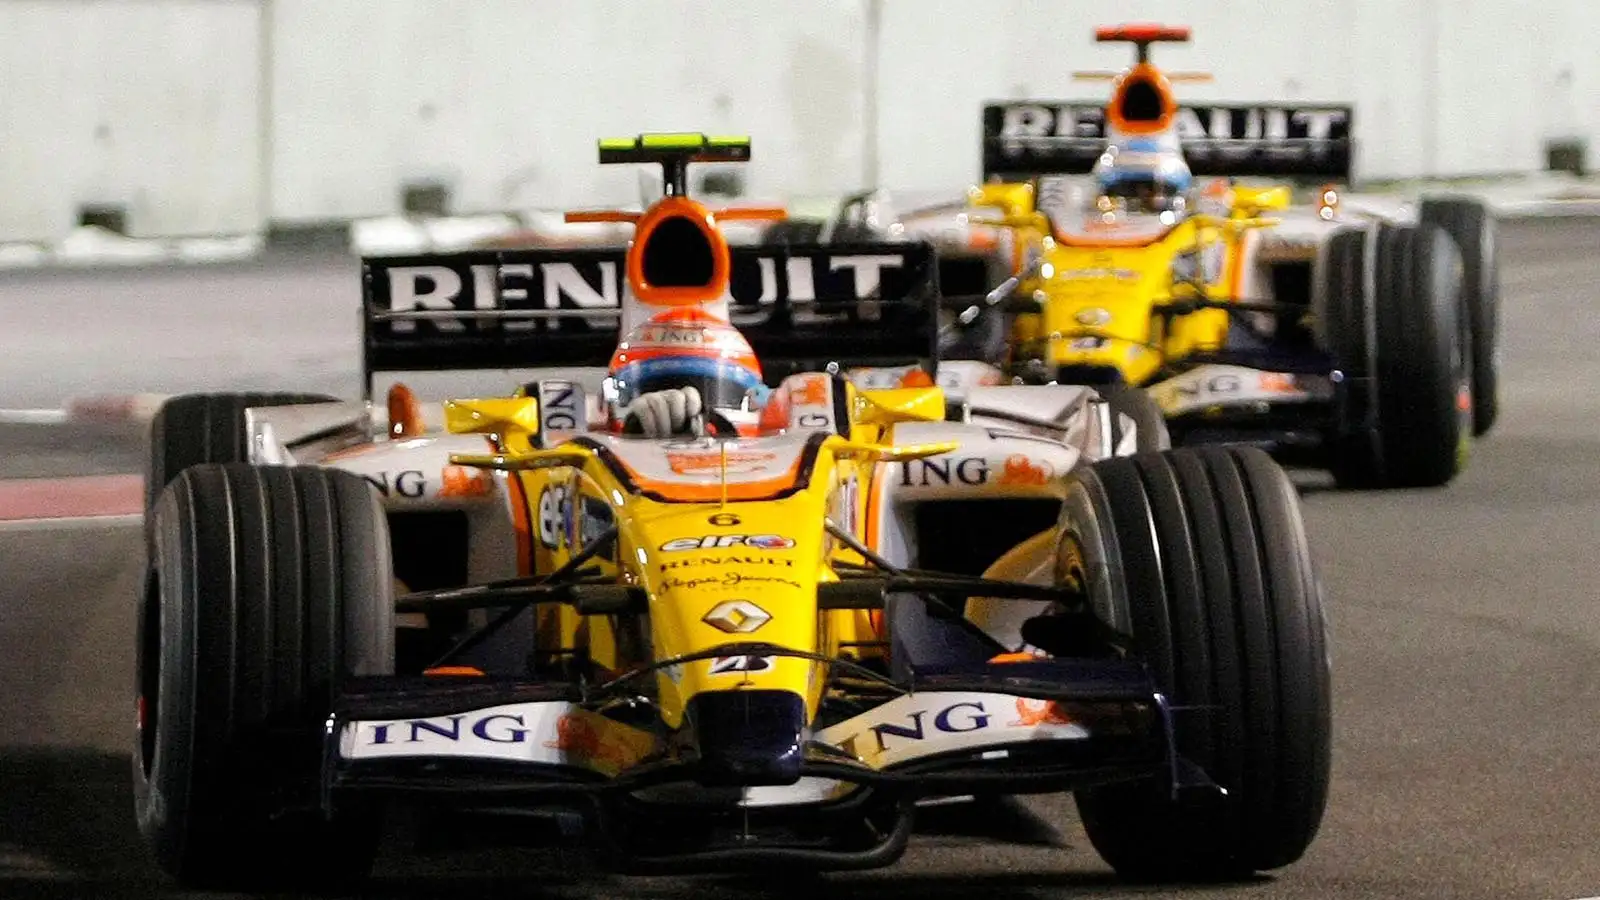 Nelson Piquet and Fernando Alonso Singapore Grand Prix